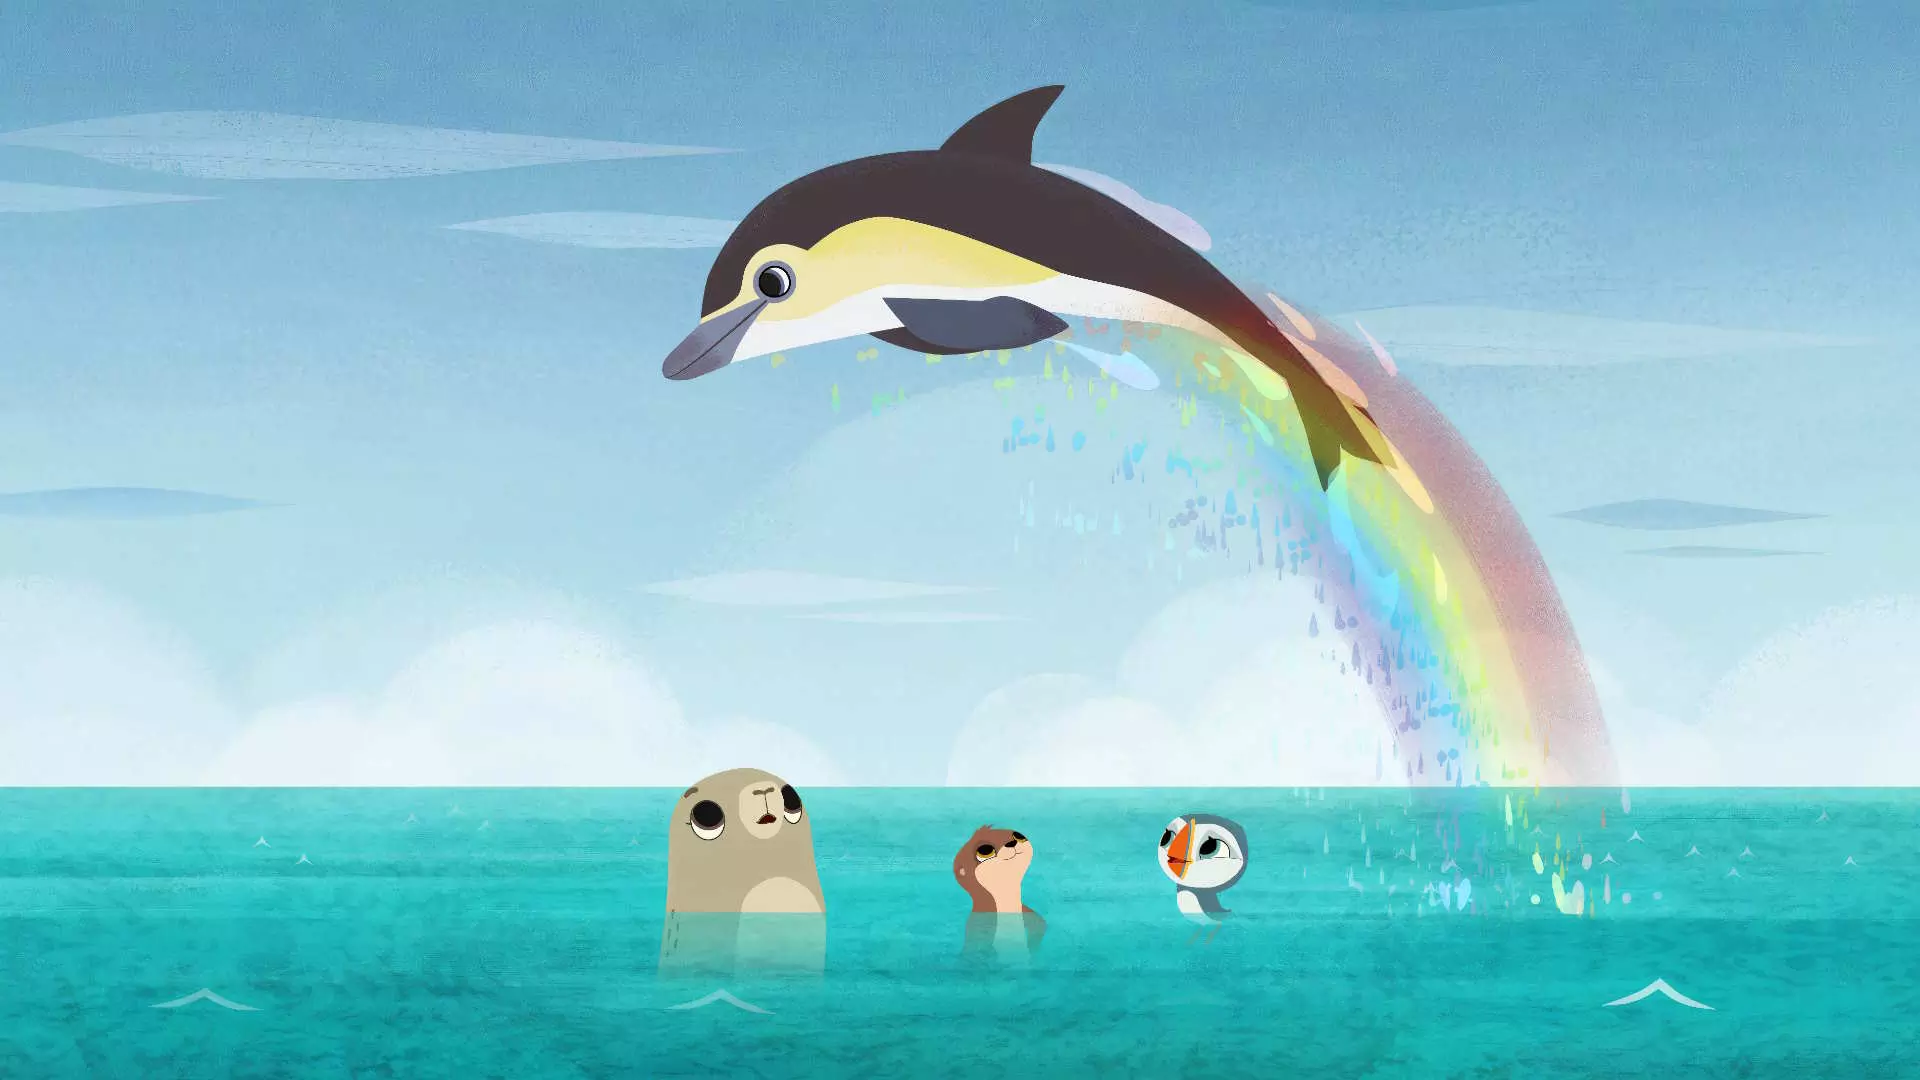 Animasjonsbilde. Ute på havet. En selv, oter (muligens en bever) og en lundefugl i havet. Over dem hopper en spekkhogger. Spekkhoggeren danner en regnbue. Det er blå himmel.